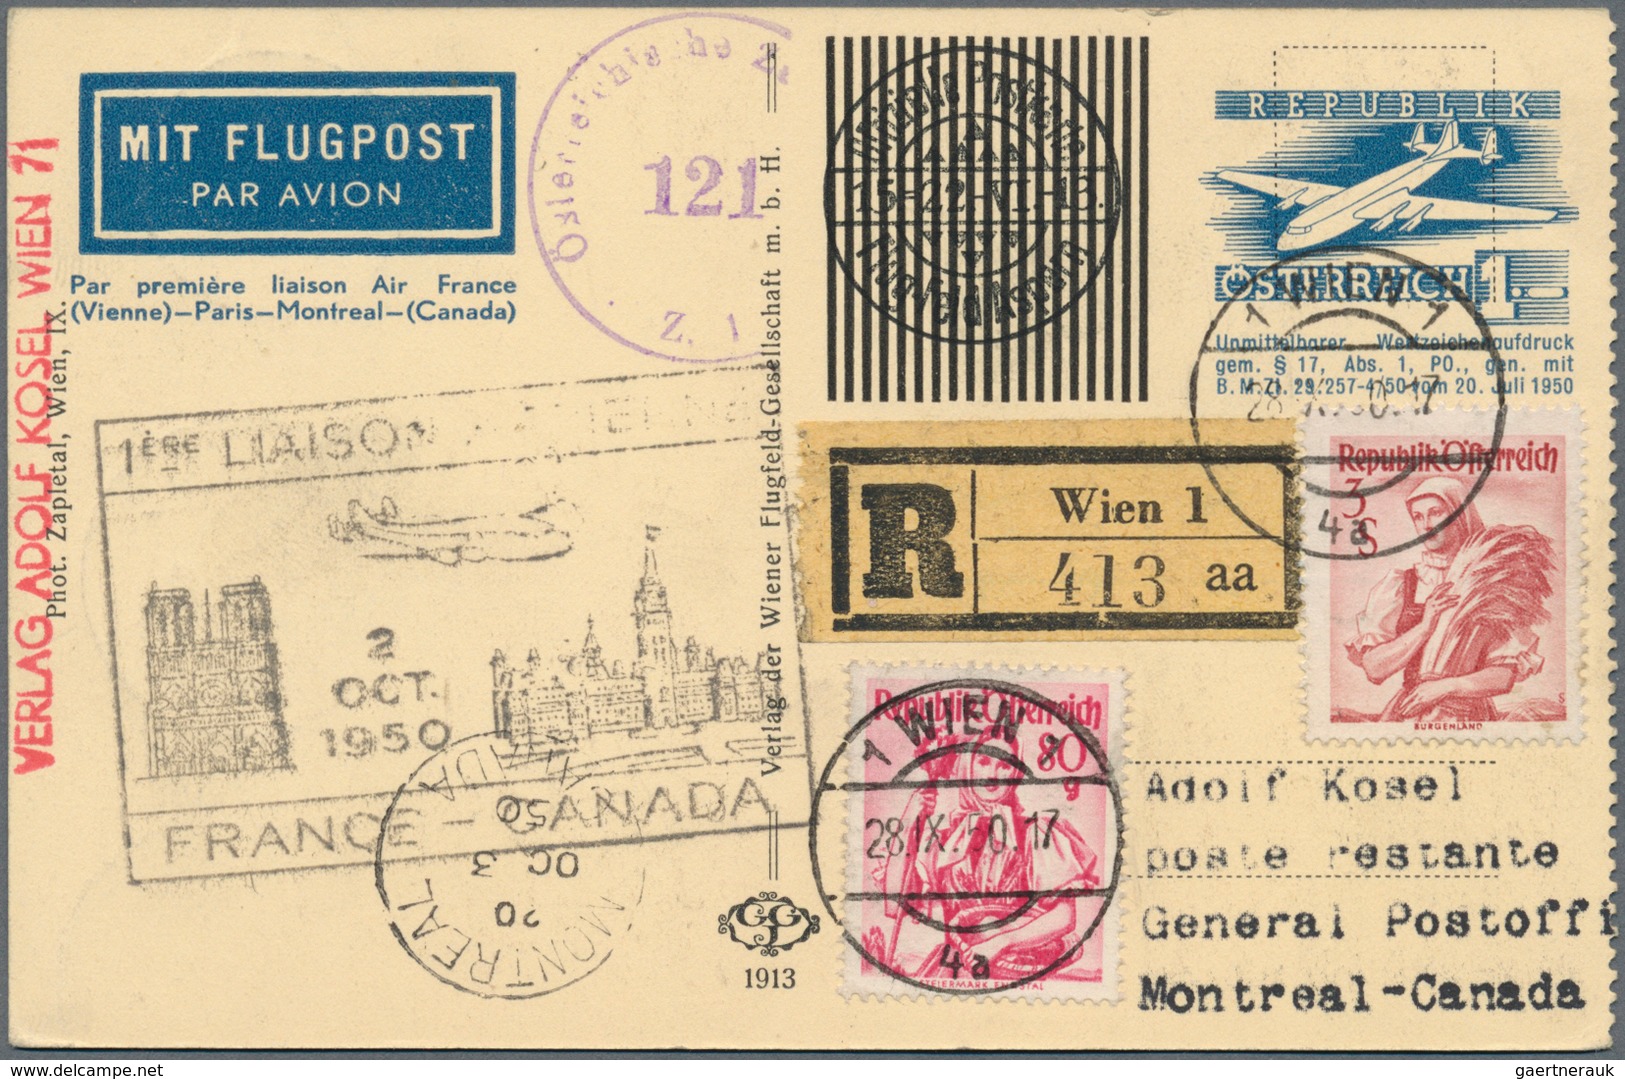 Österreich - Flugpost: 1950, Erstflug Wien-PARIS-MONTREAL(Kanada), 1 S blau Flugpost-Wertstempel, ko